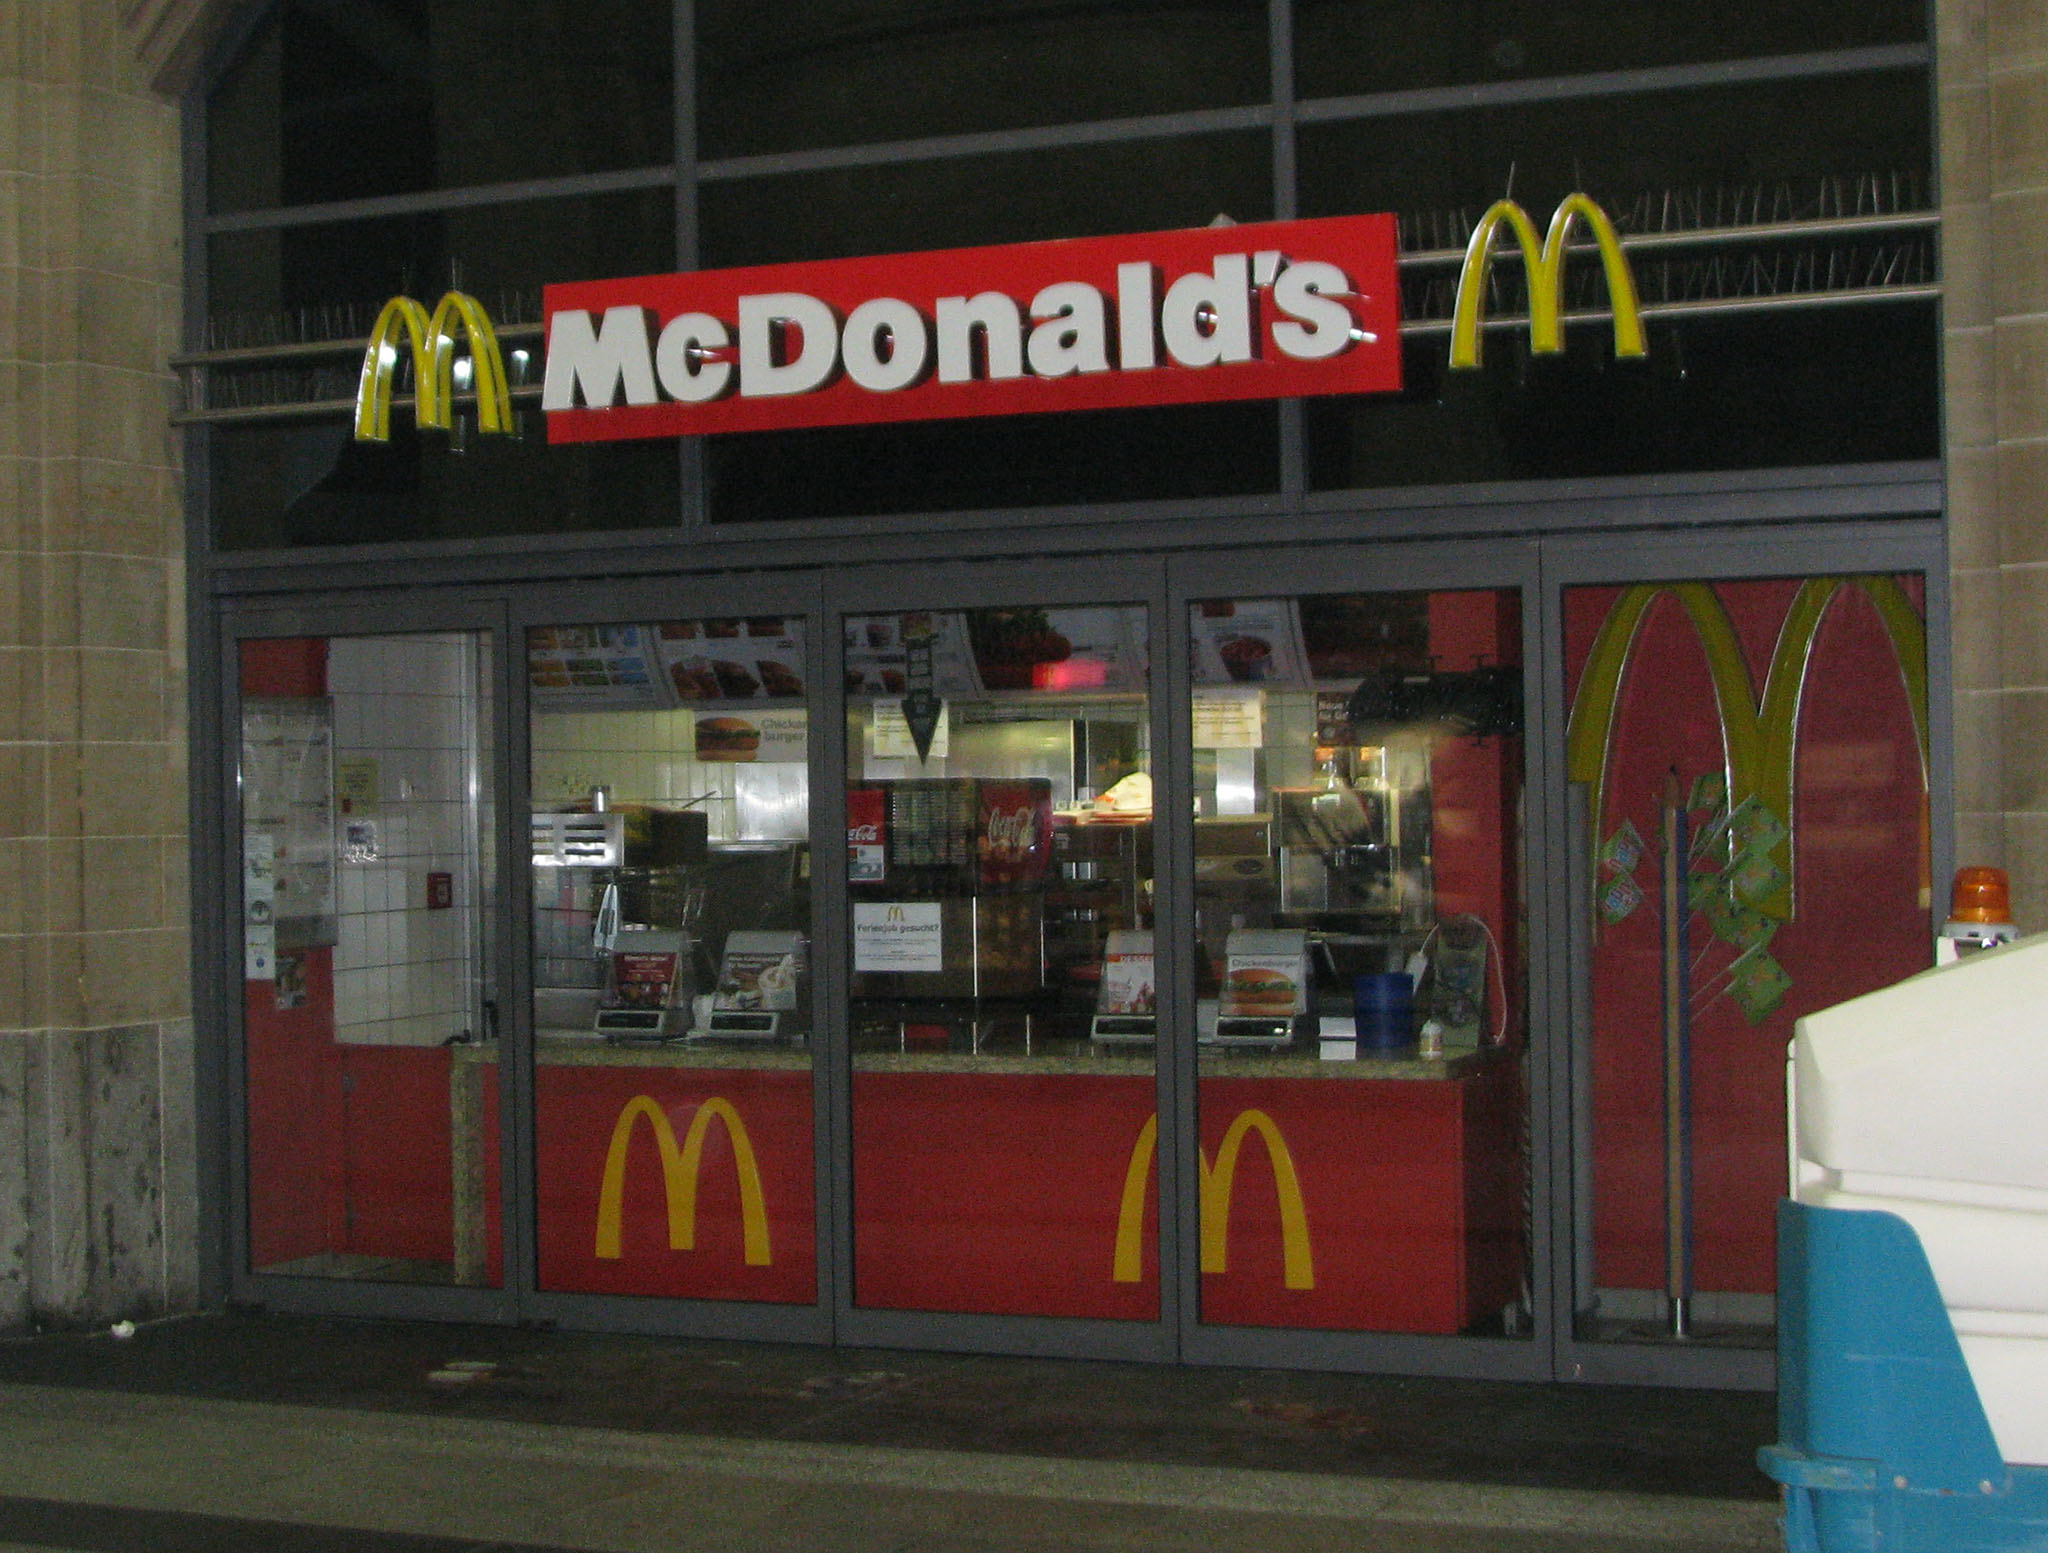 Das McDonald’s-Restaurant in Wiesbaden (Hauptbahnhhof)